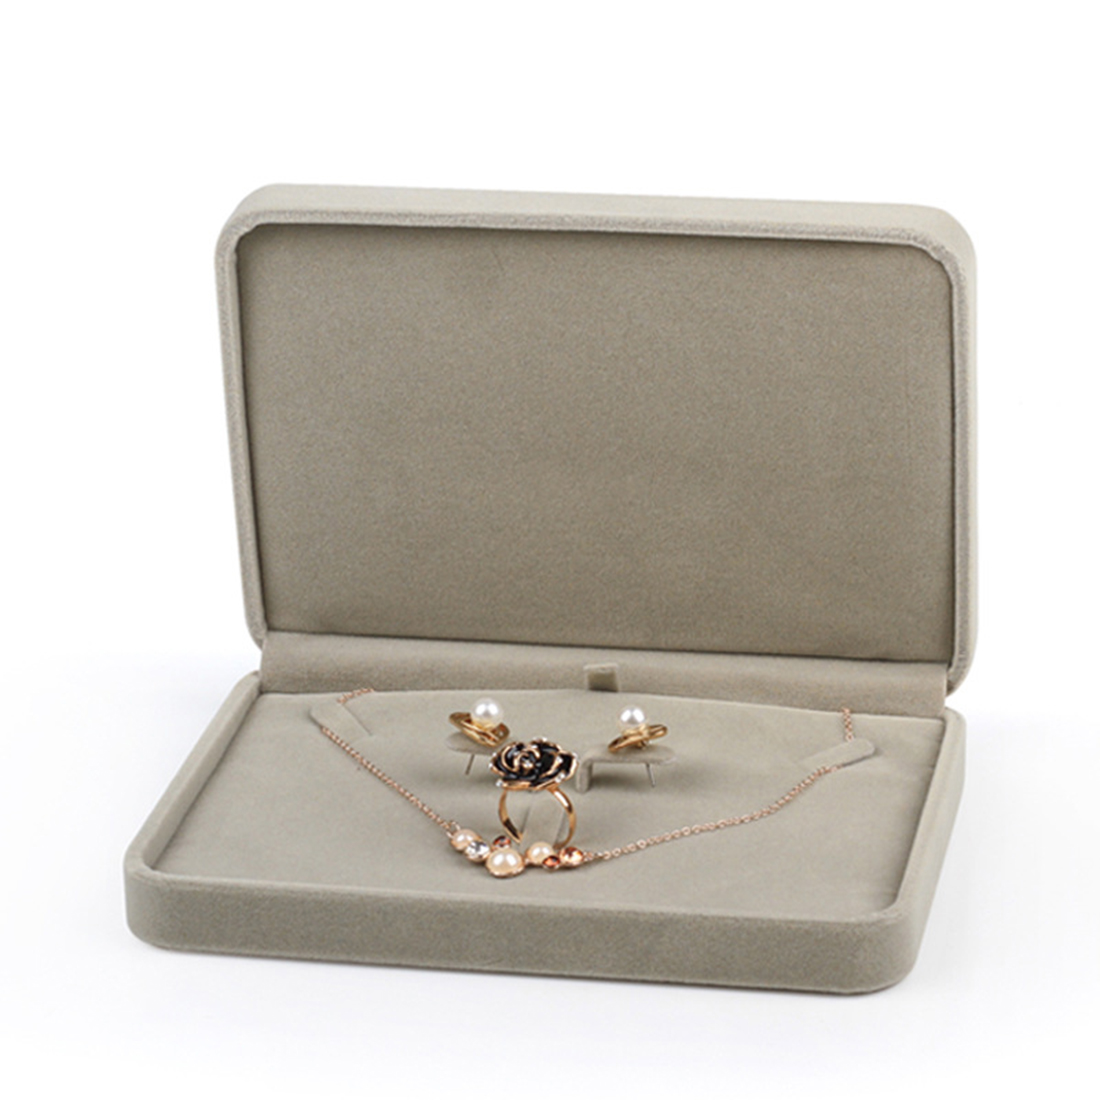 7:Jewelry Set Box 175x120x35mm